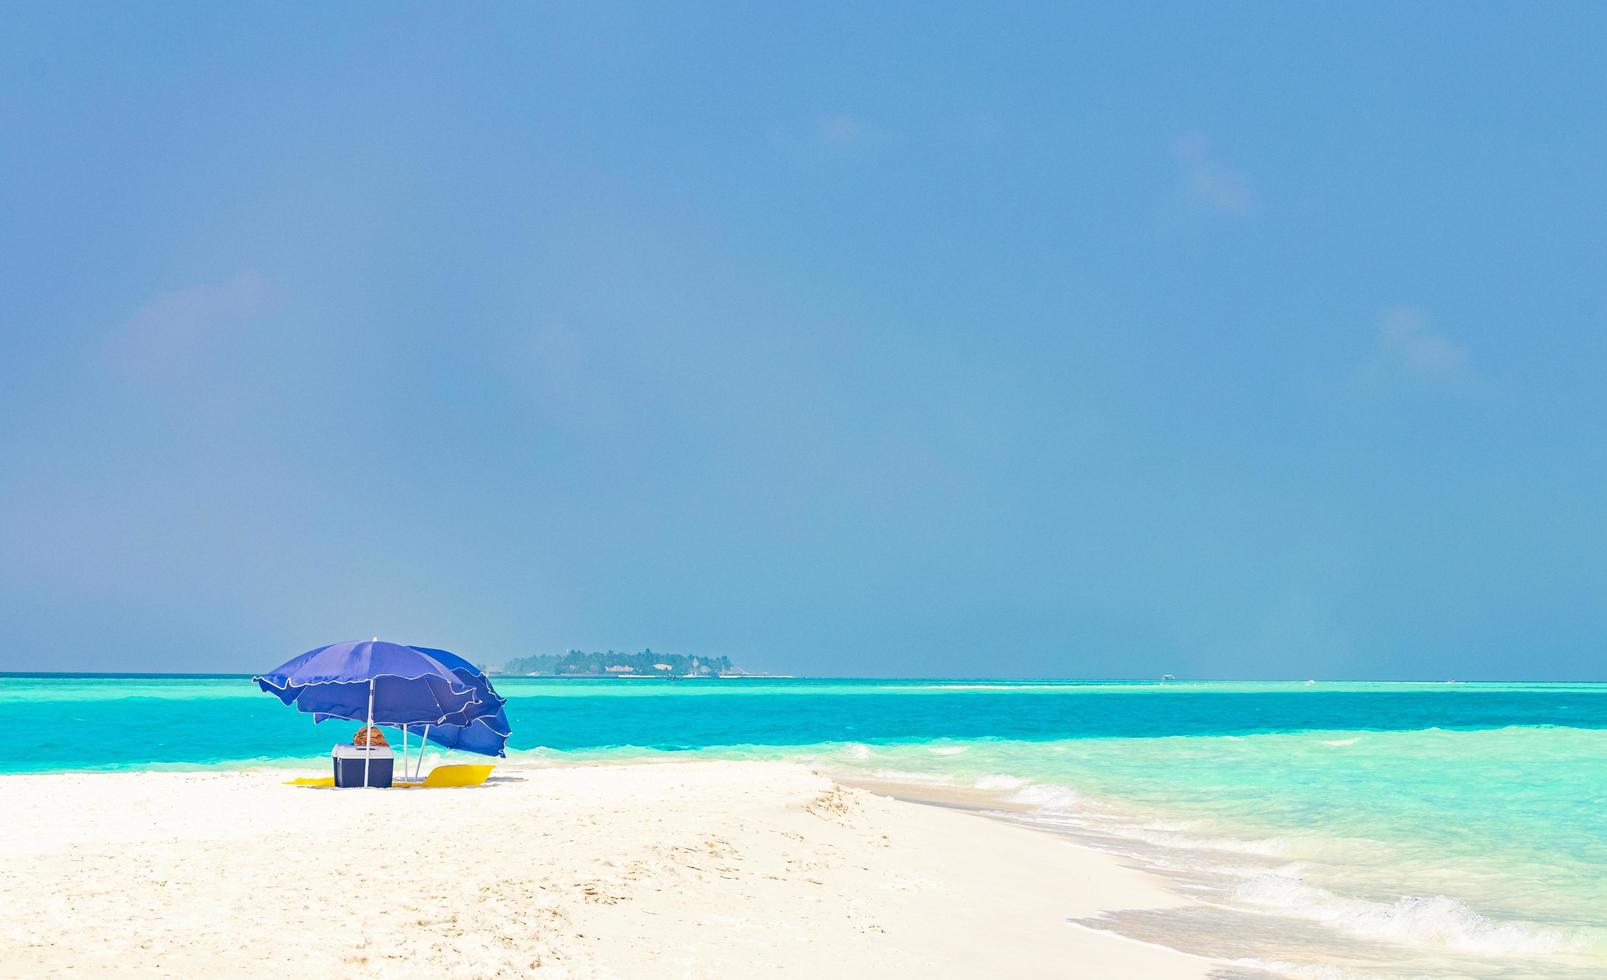 gradiente di colore alle isole del banco di sabbia madivaru finolhu atollo di rasdhoo maldive. foto